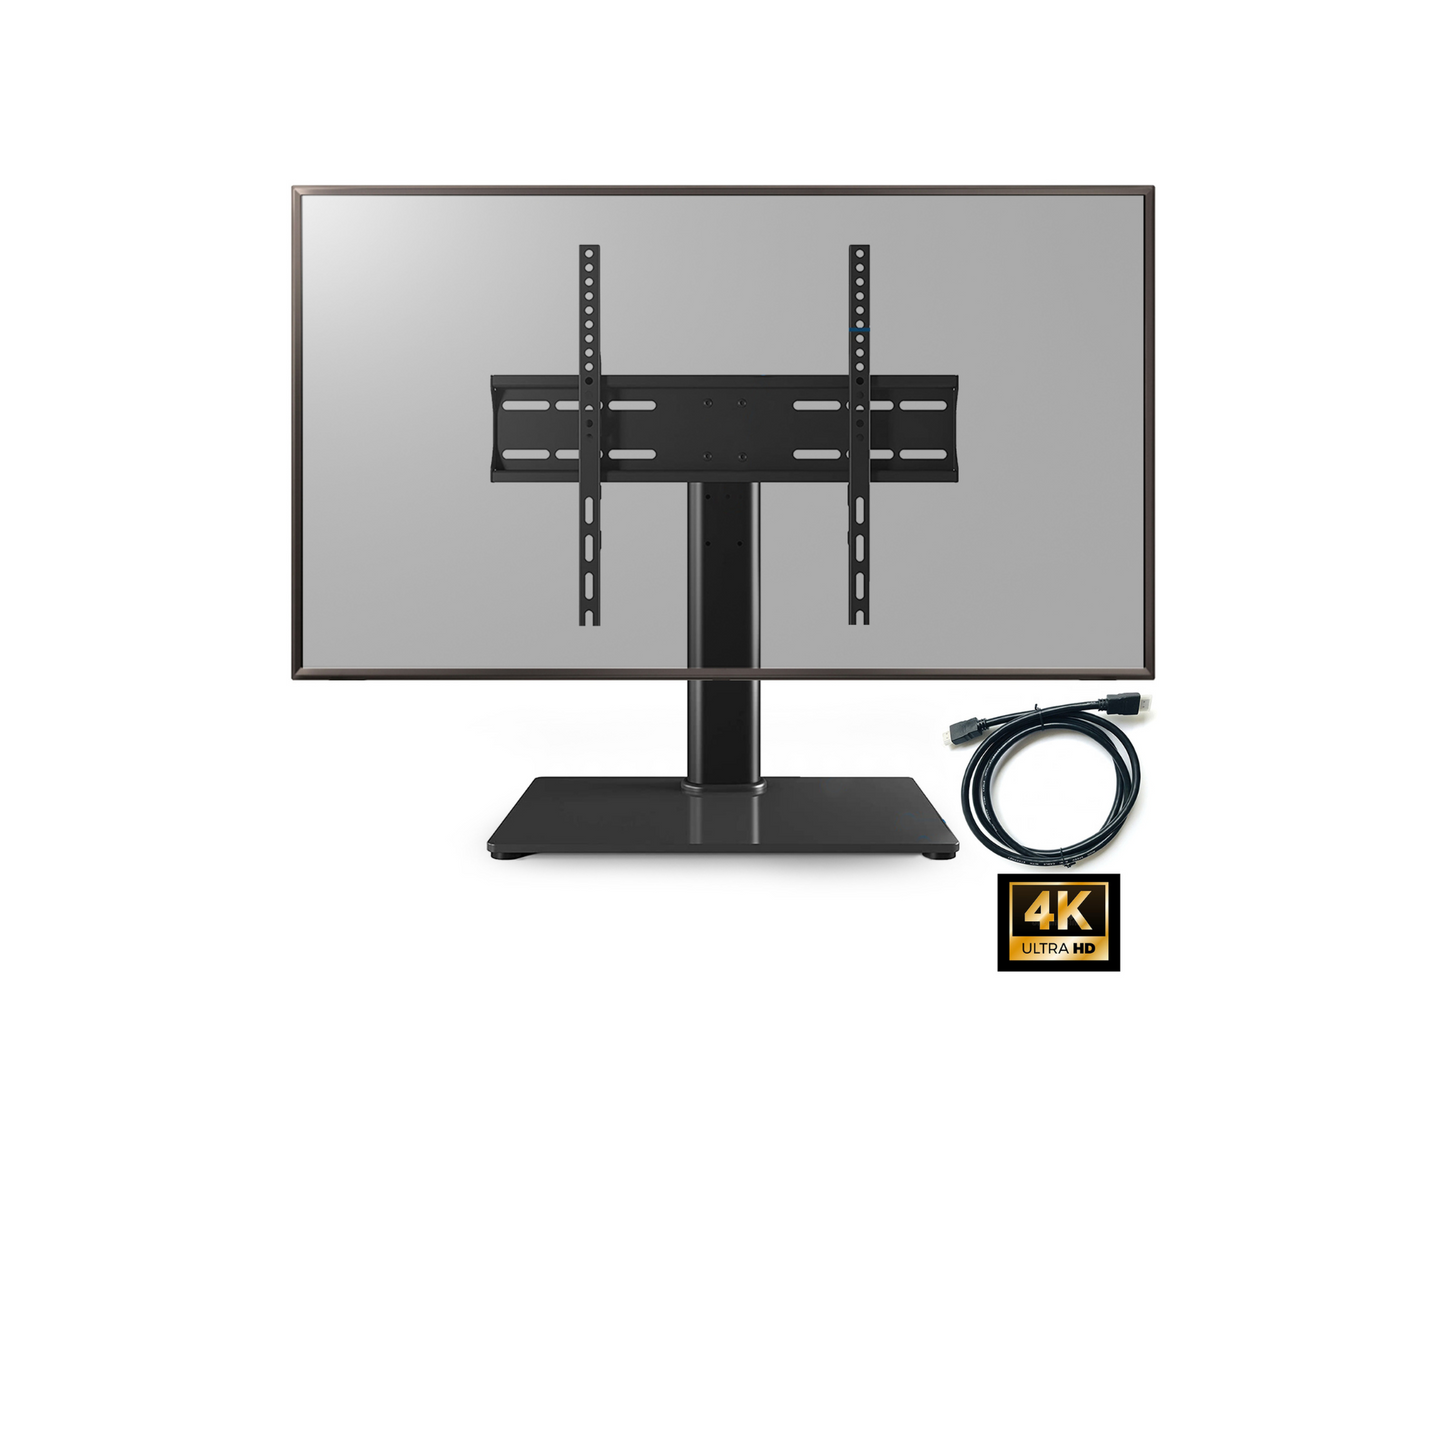 PALMAT Essential Tisch-TV-Ständer für TV-Bildschirme mit Sockelstärke aus gehärtetem Glas 10 mm Halterung 23 - 50 Zoll